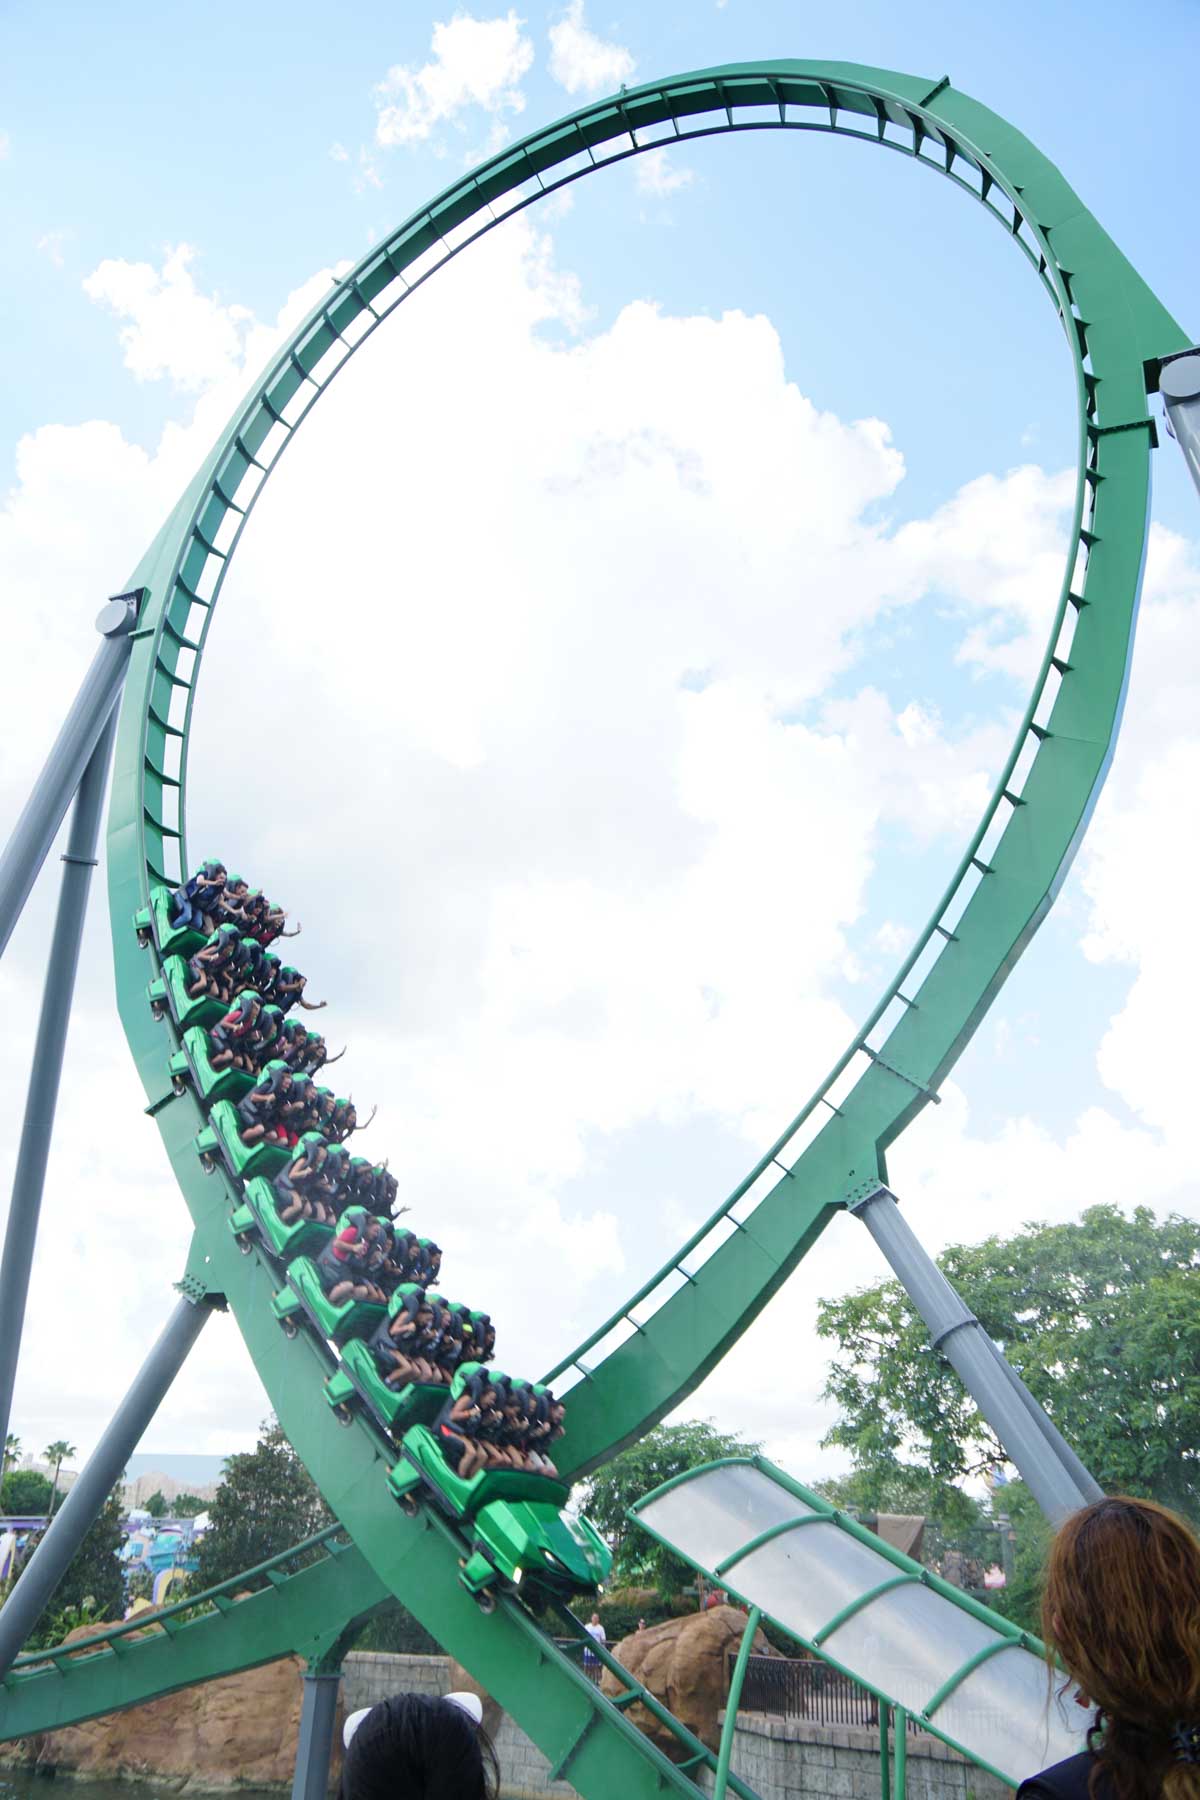 loop on Incredible Hulk coaster